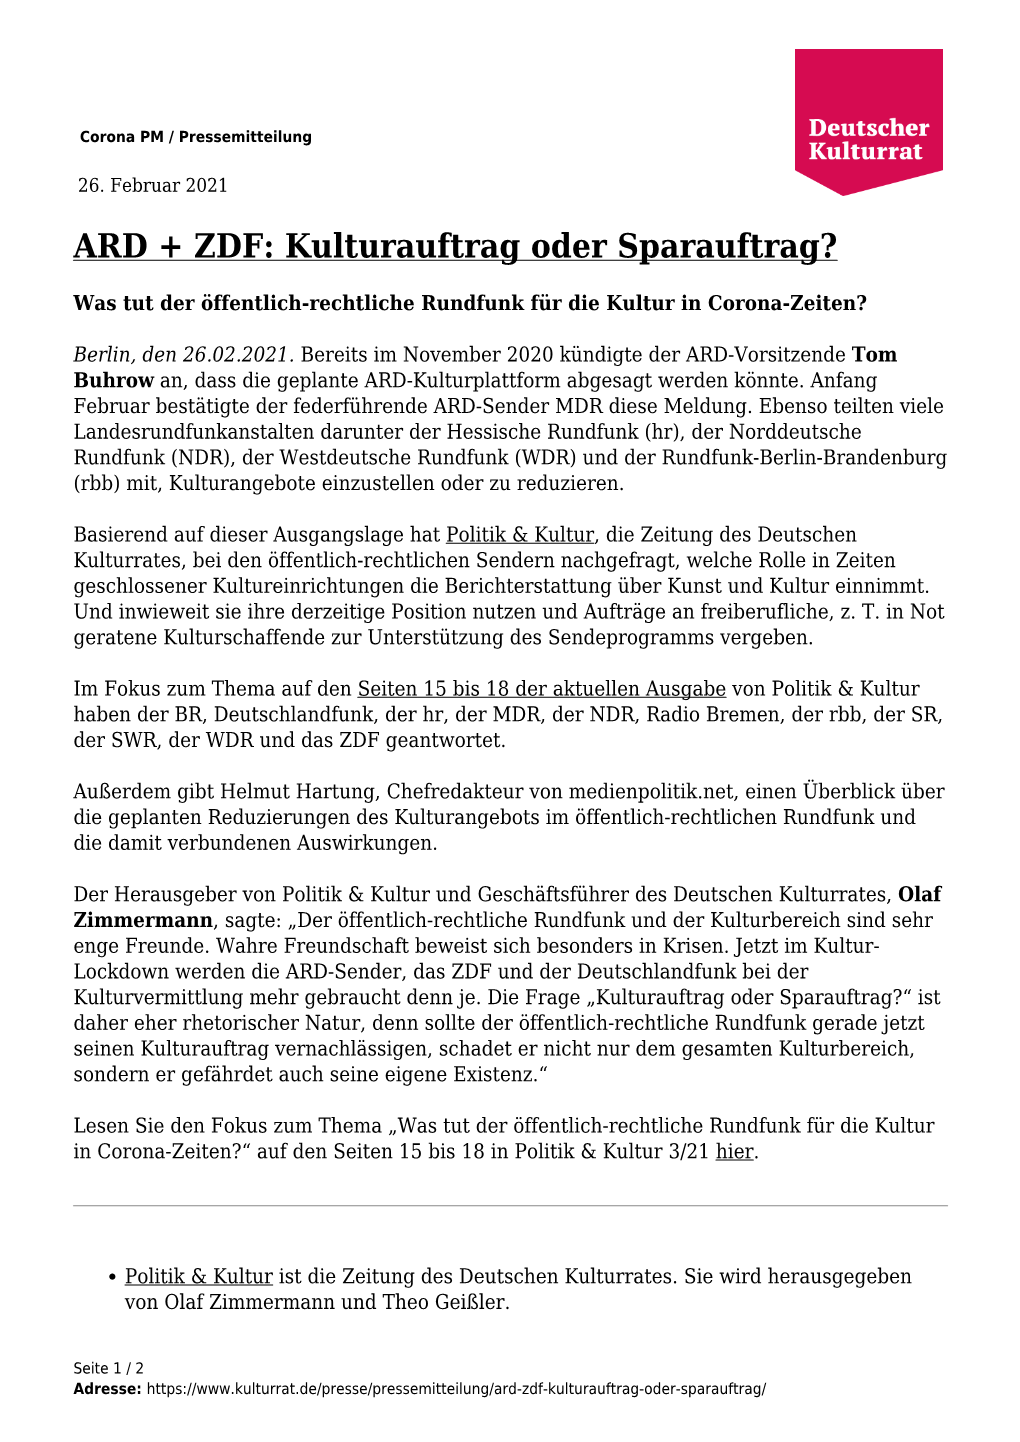 ARD + ZDF: Kulturauftrag Oder Sparauftrag?